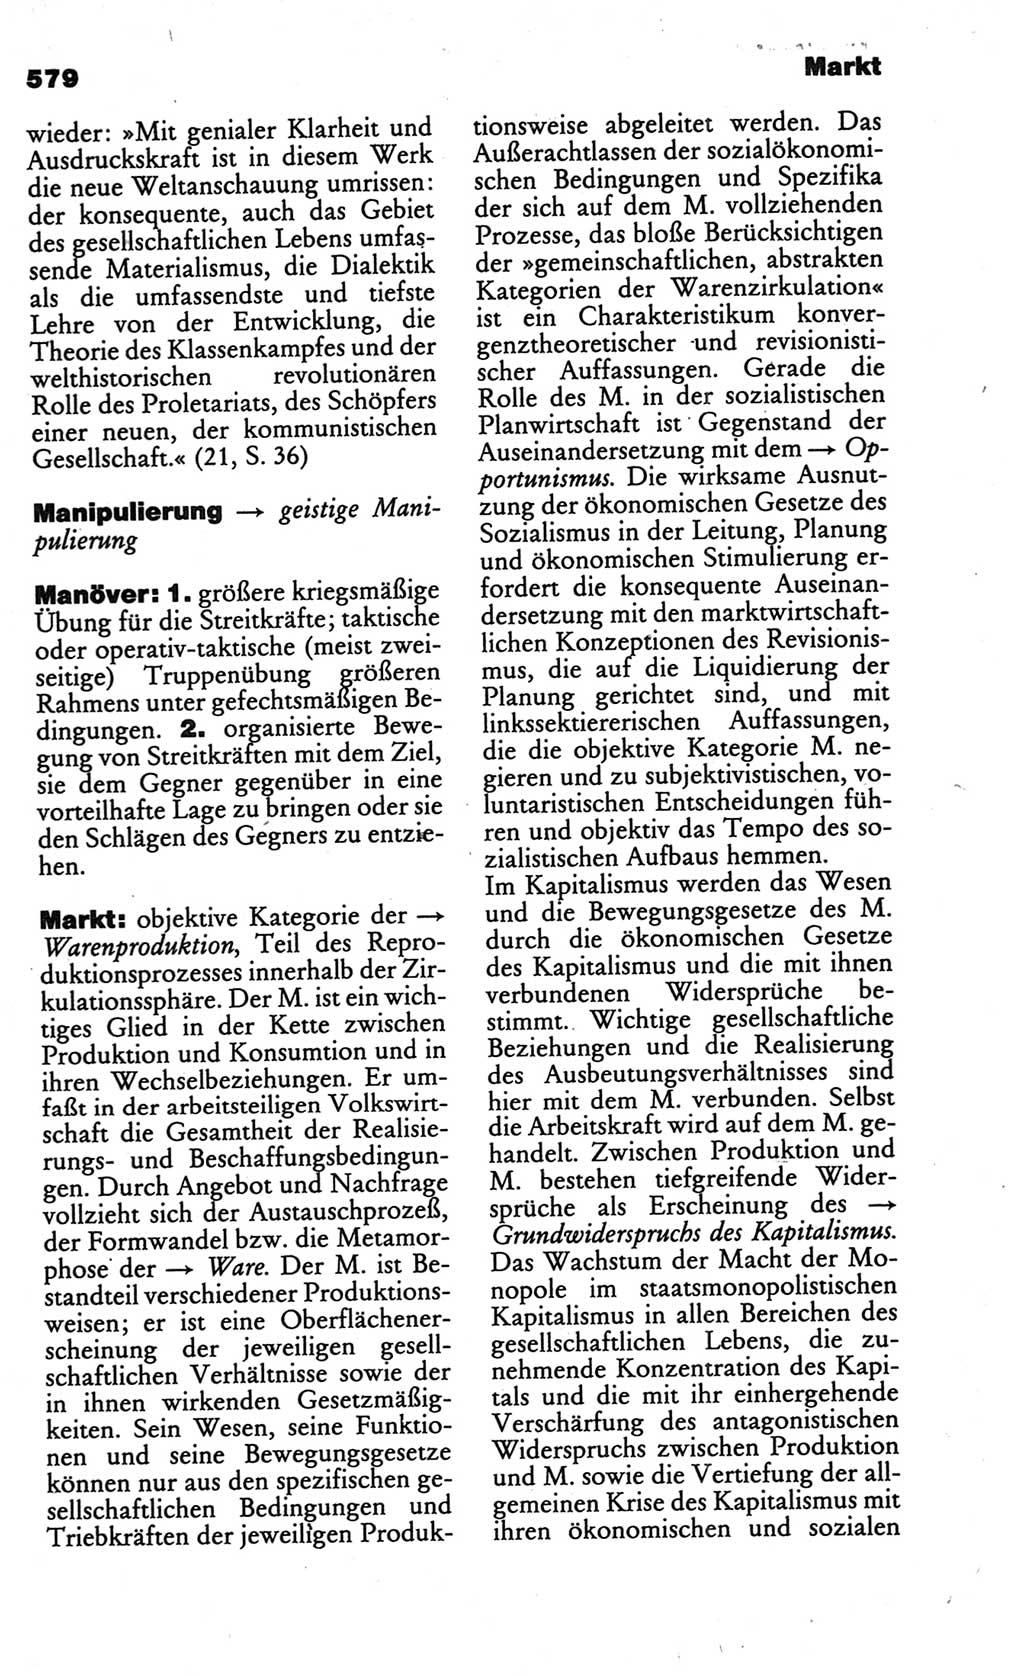 Kleines politisches Wörterbuch [Deutsche Demokratische Republik (DDR)] 1986, Seite 579 (Kl. pol. Wb. DDR 1986, S. 579)